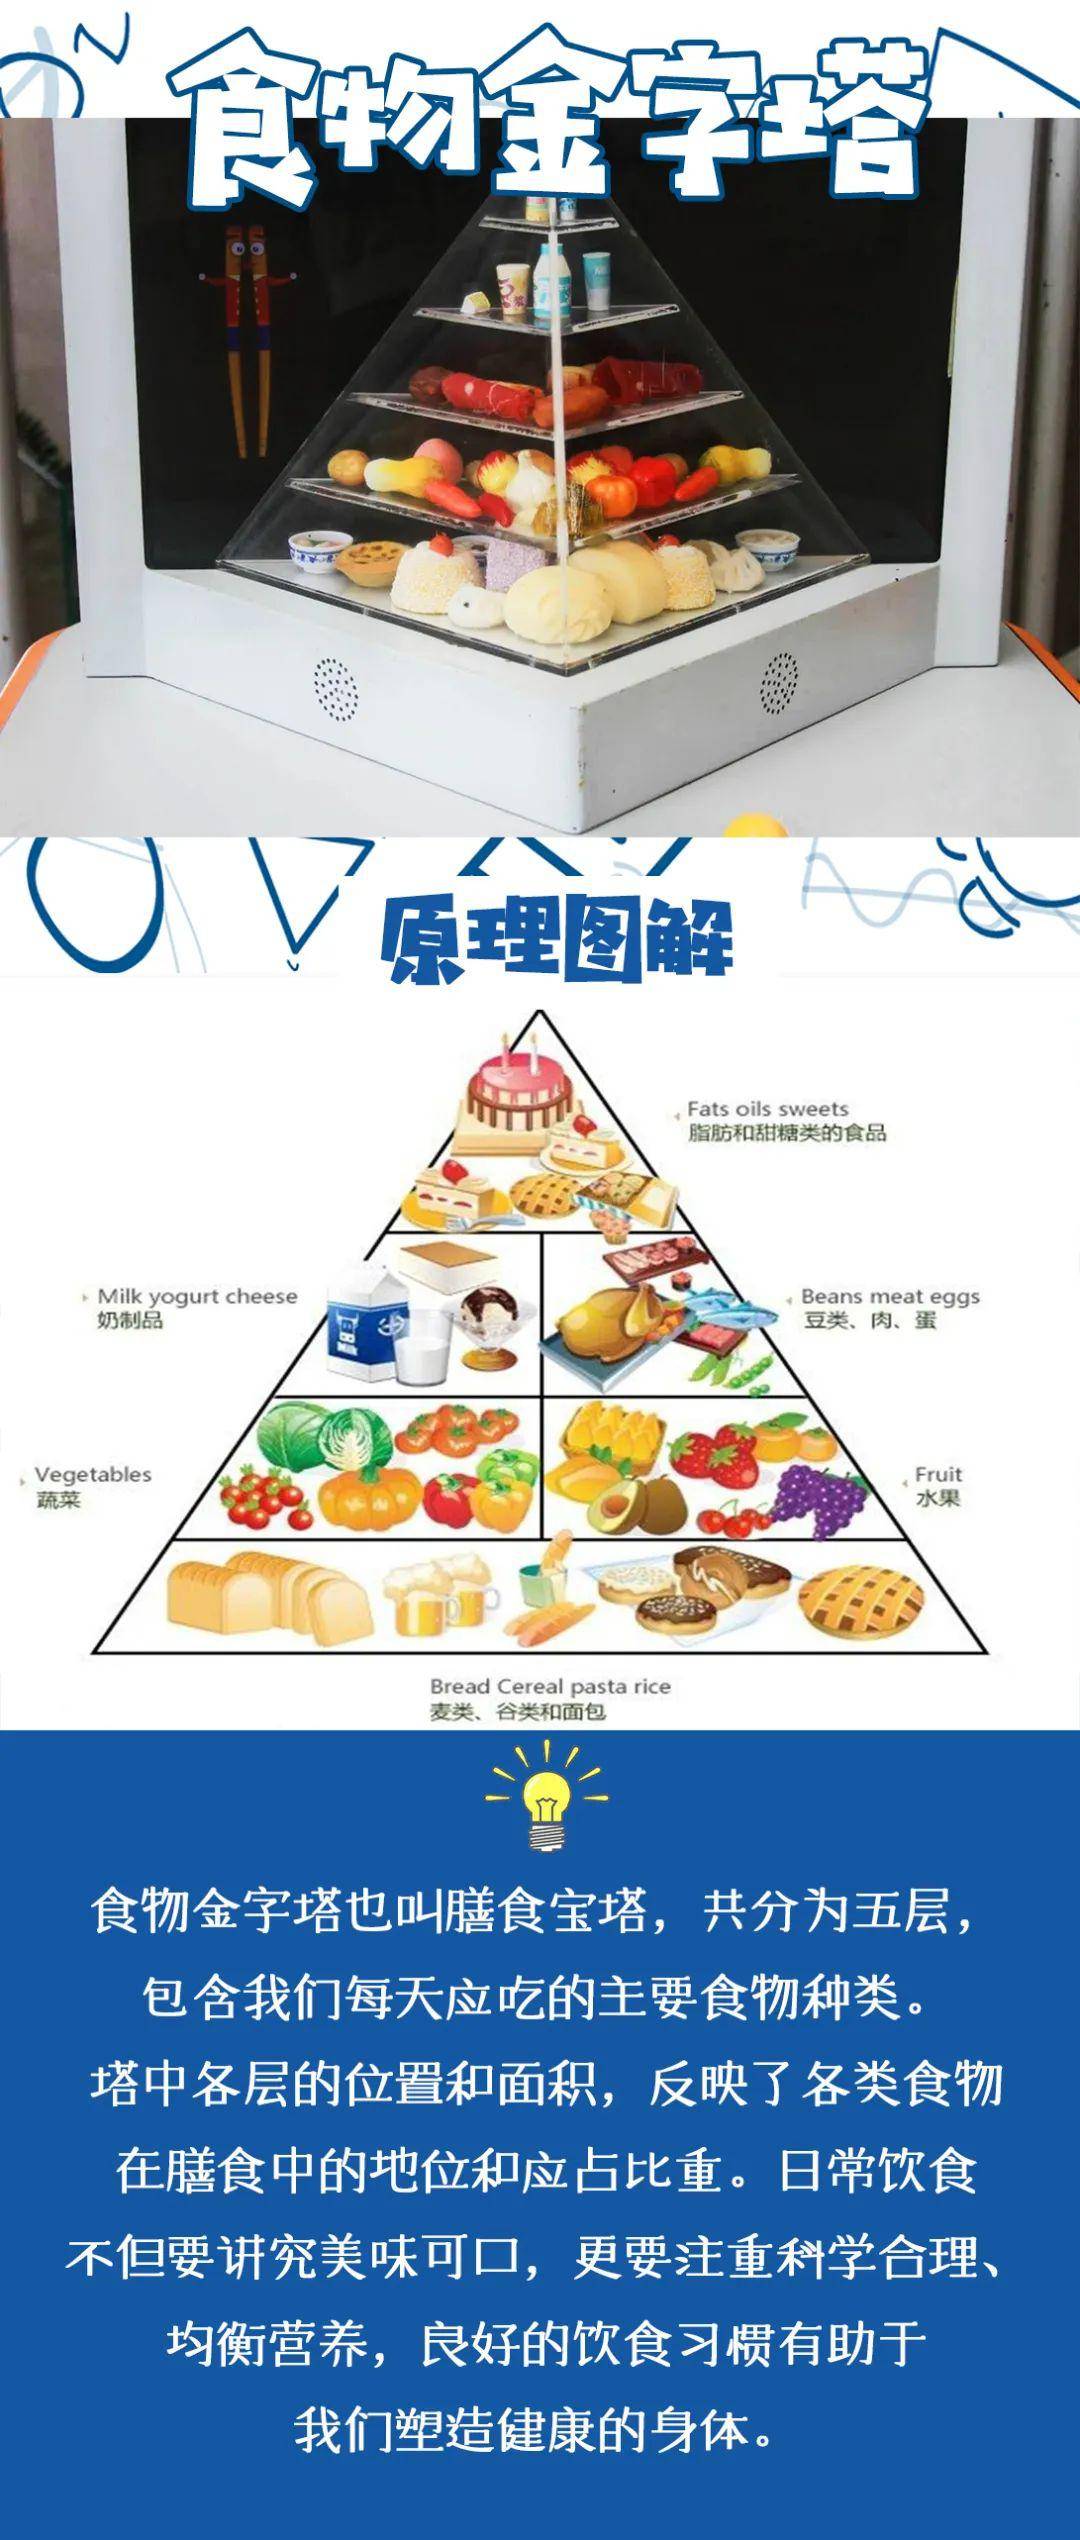 小艾带你云游中国流动科技馆第四期你知道食物金字塔吗